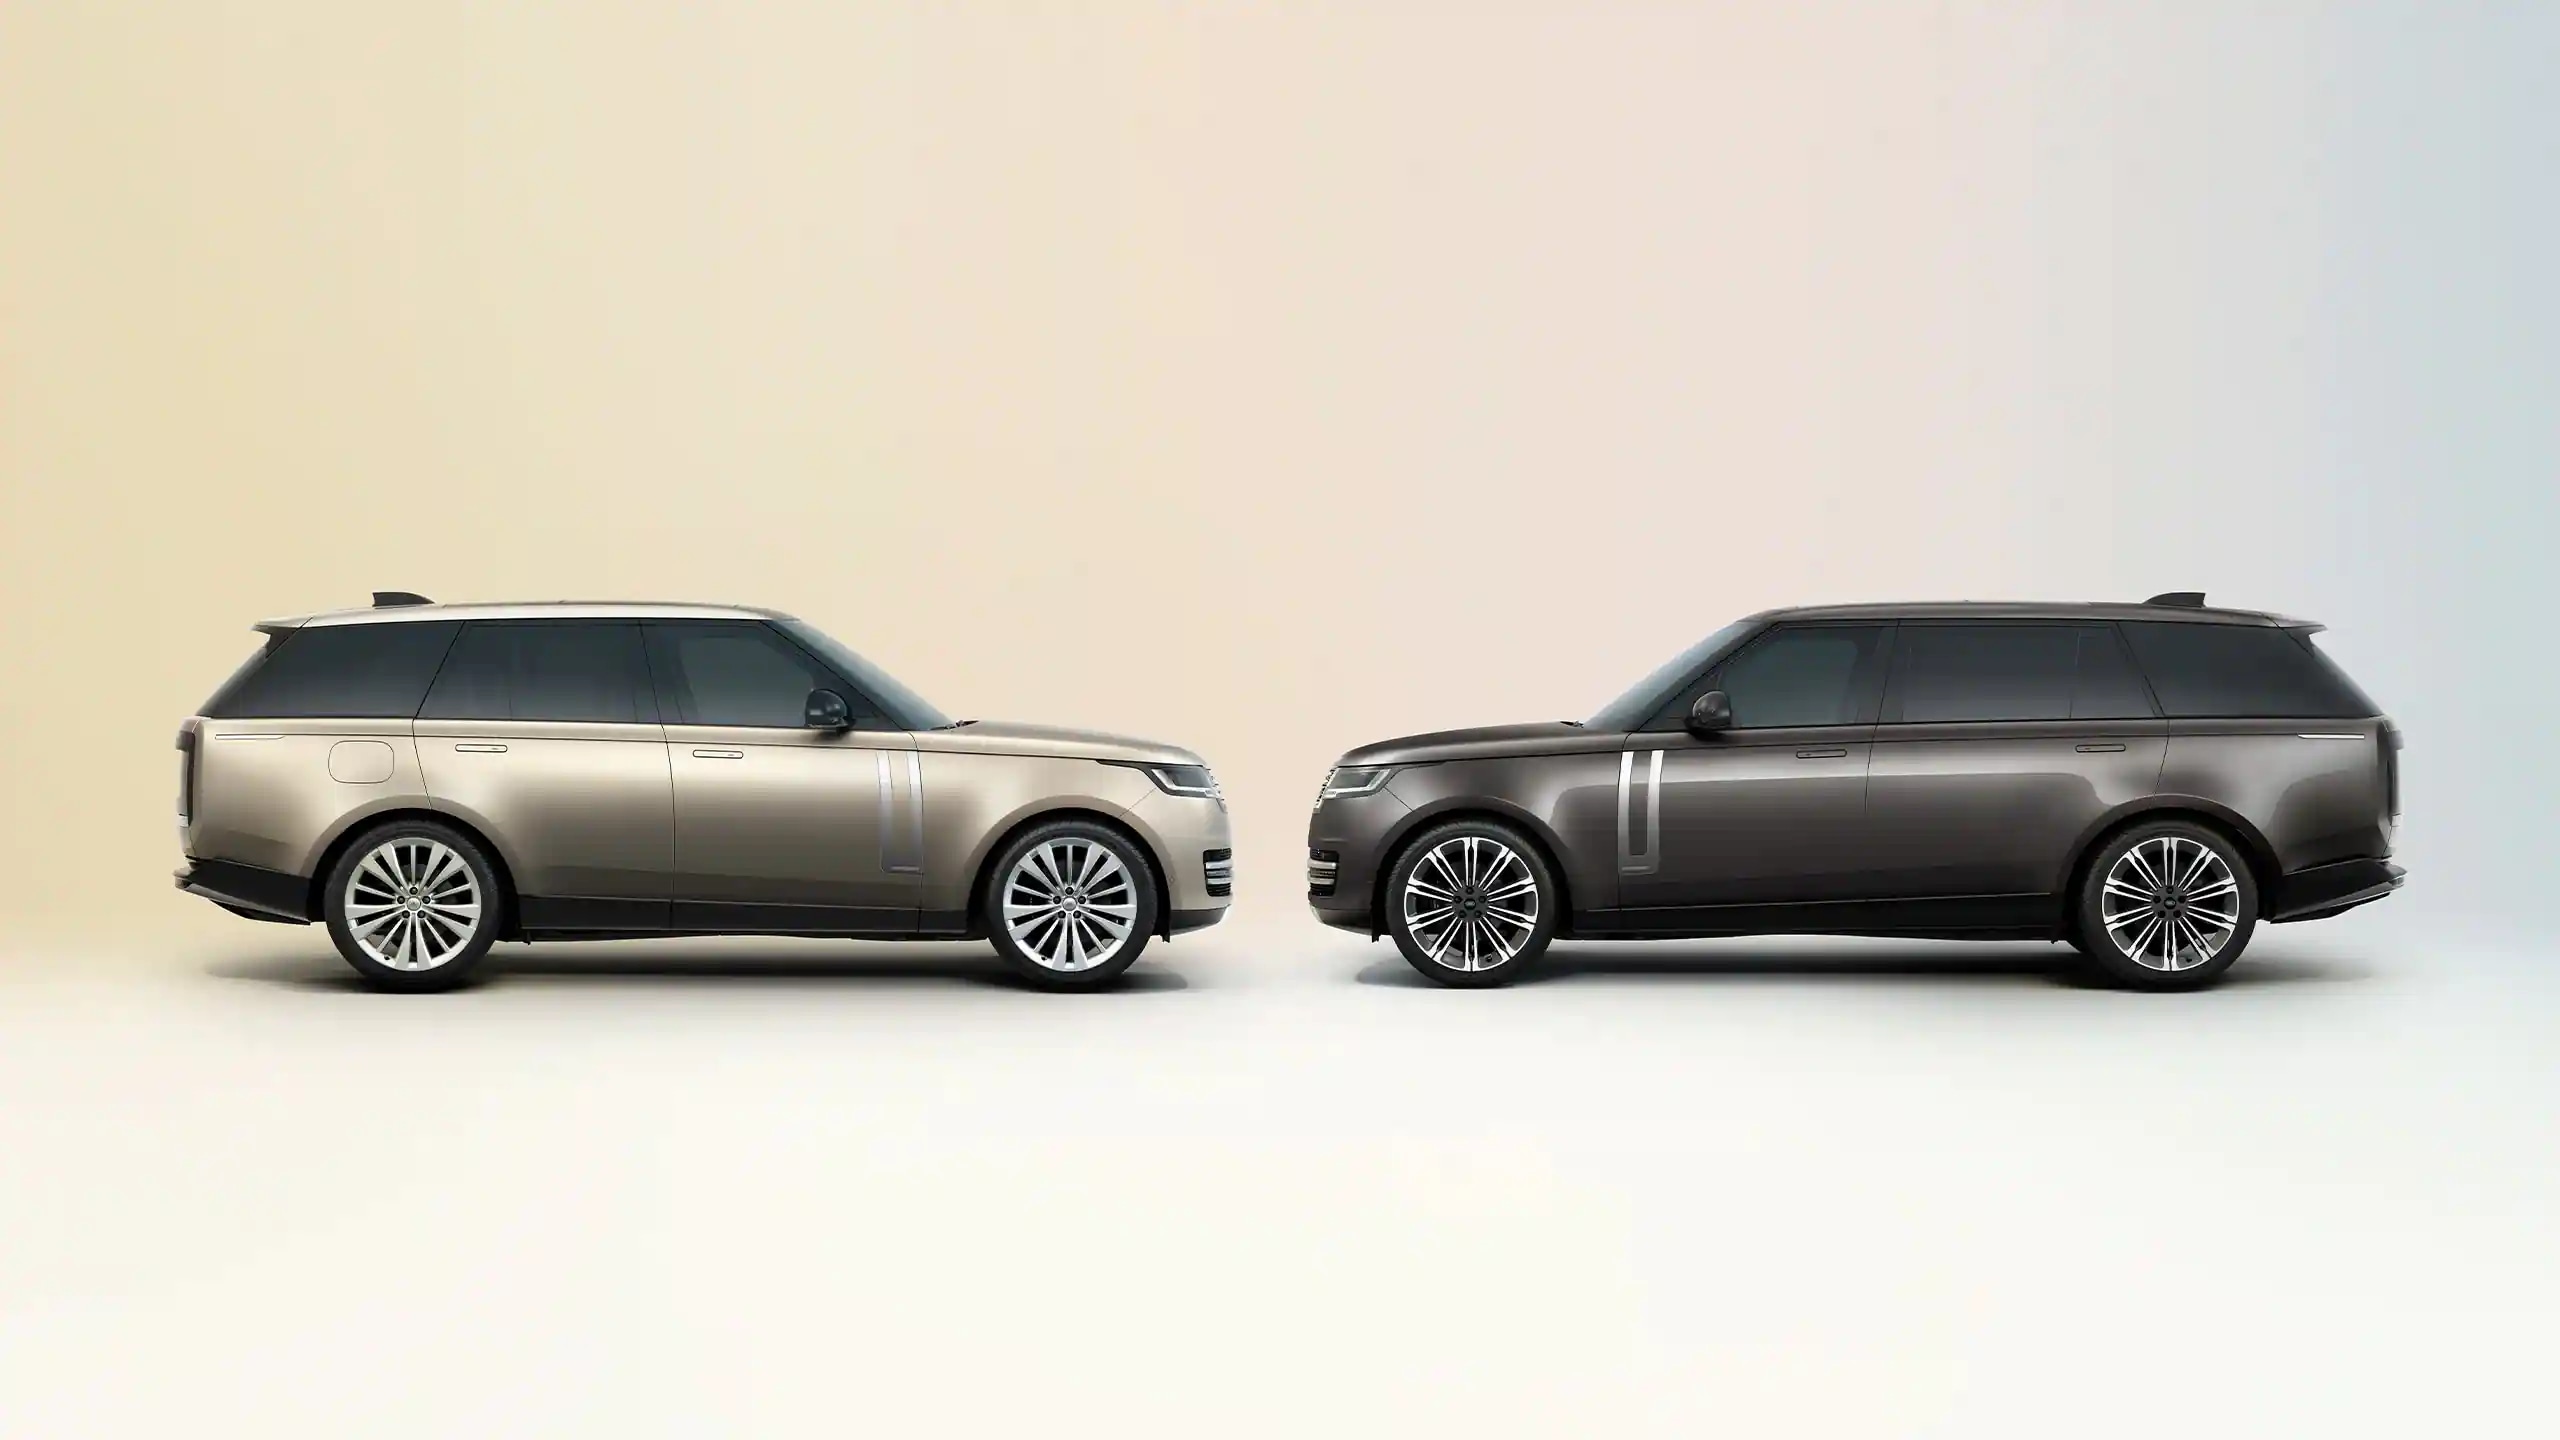 New Range Rover Velar Models, Range Rover